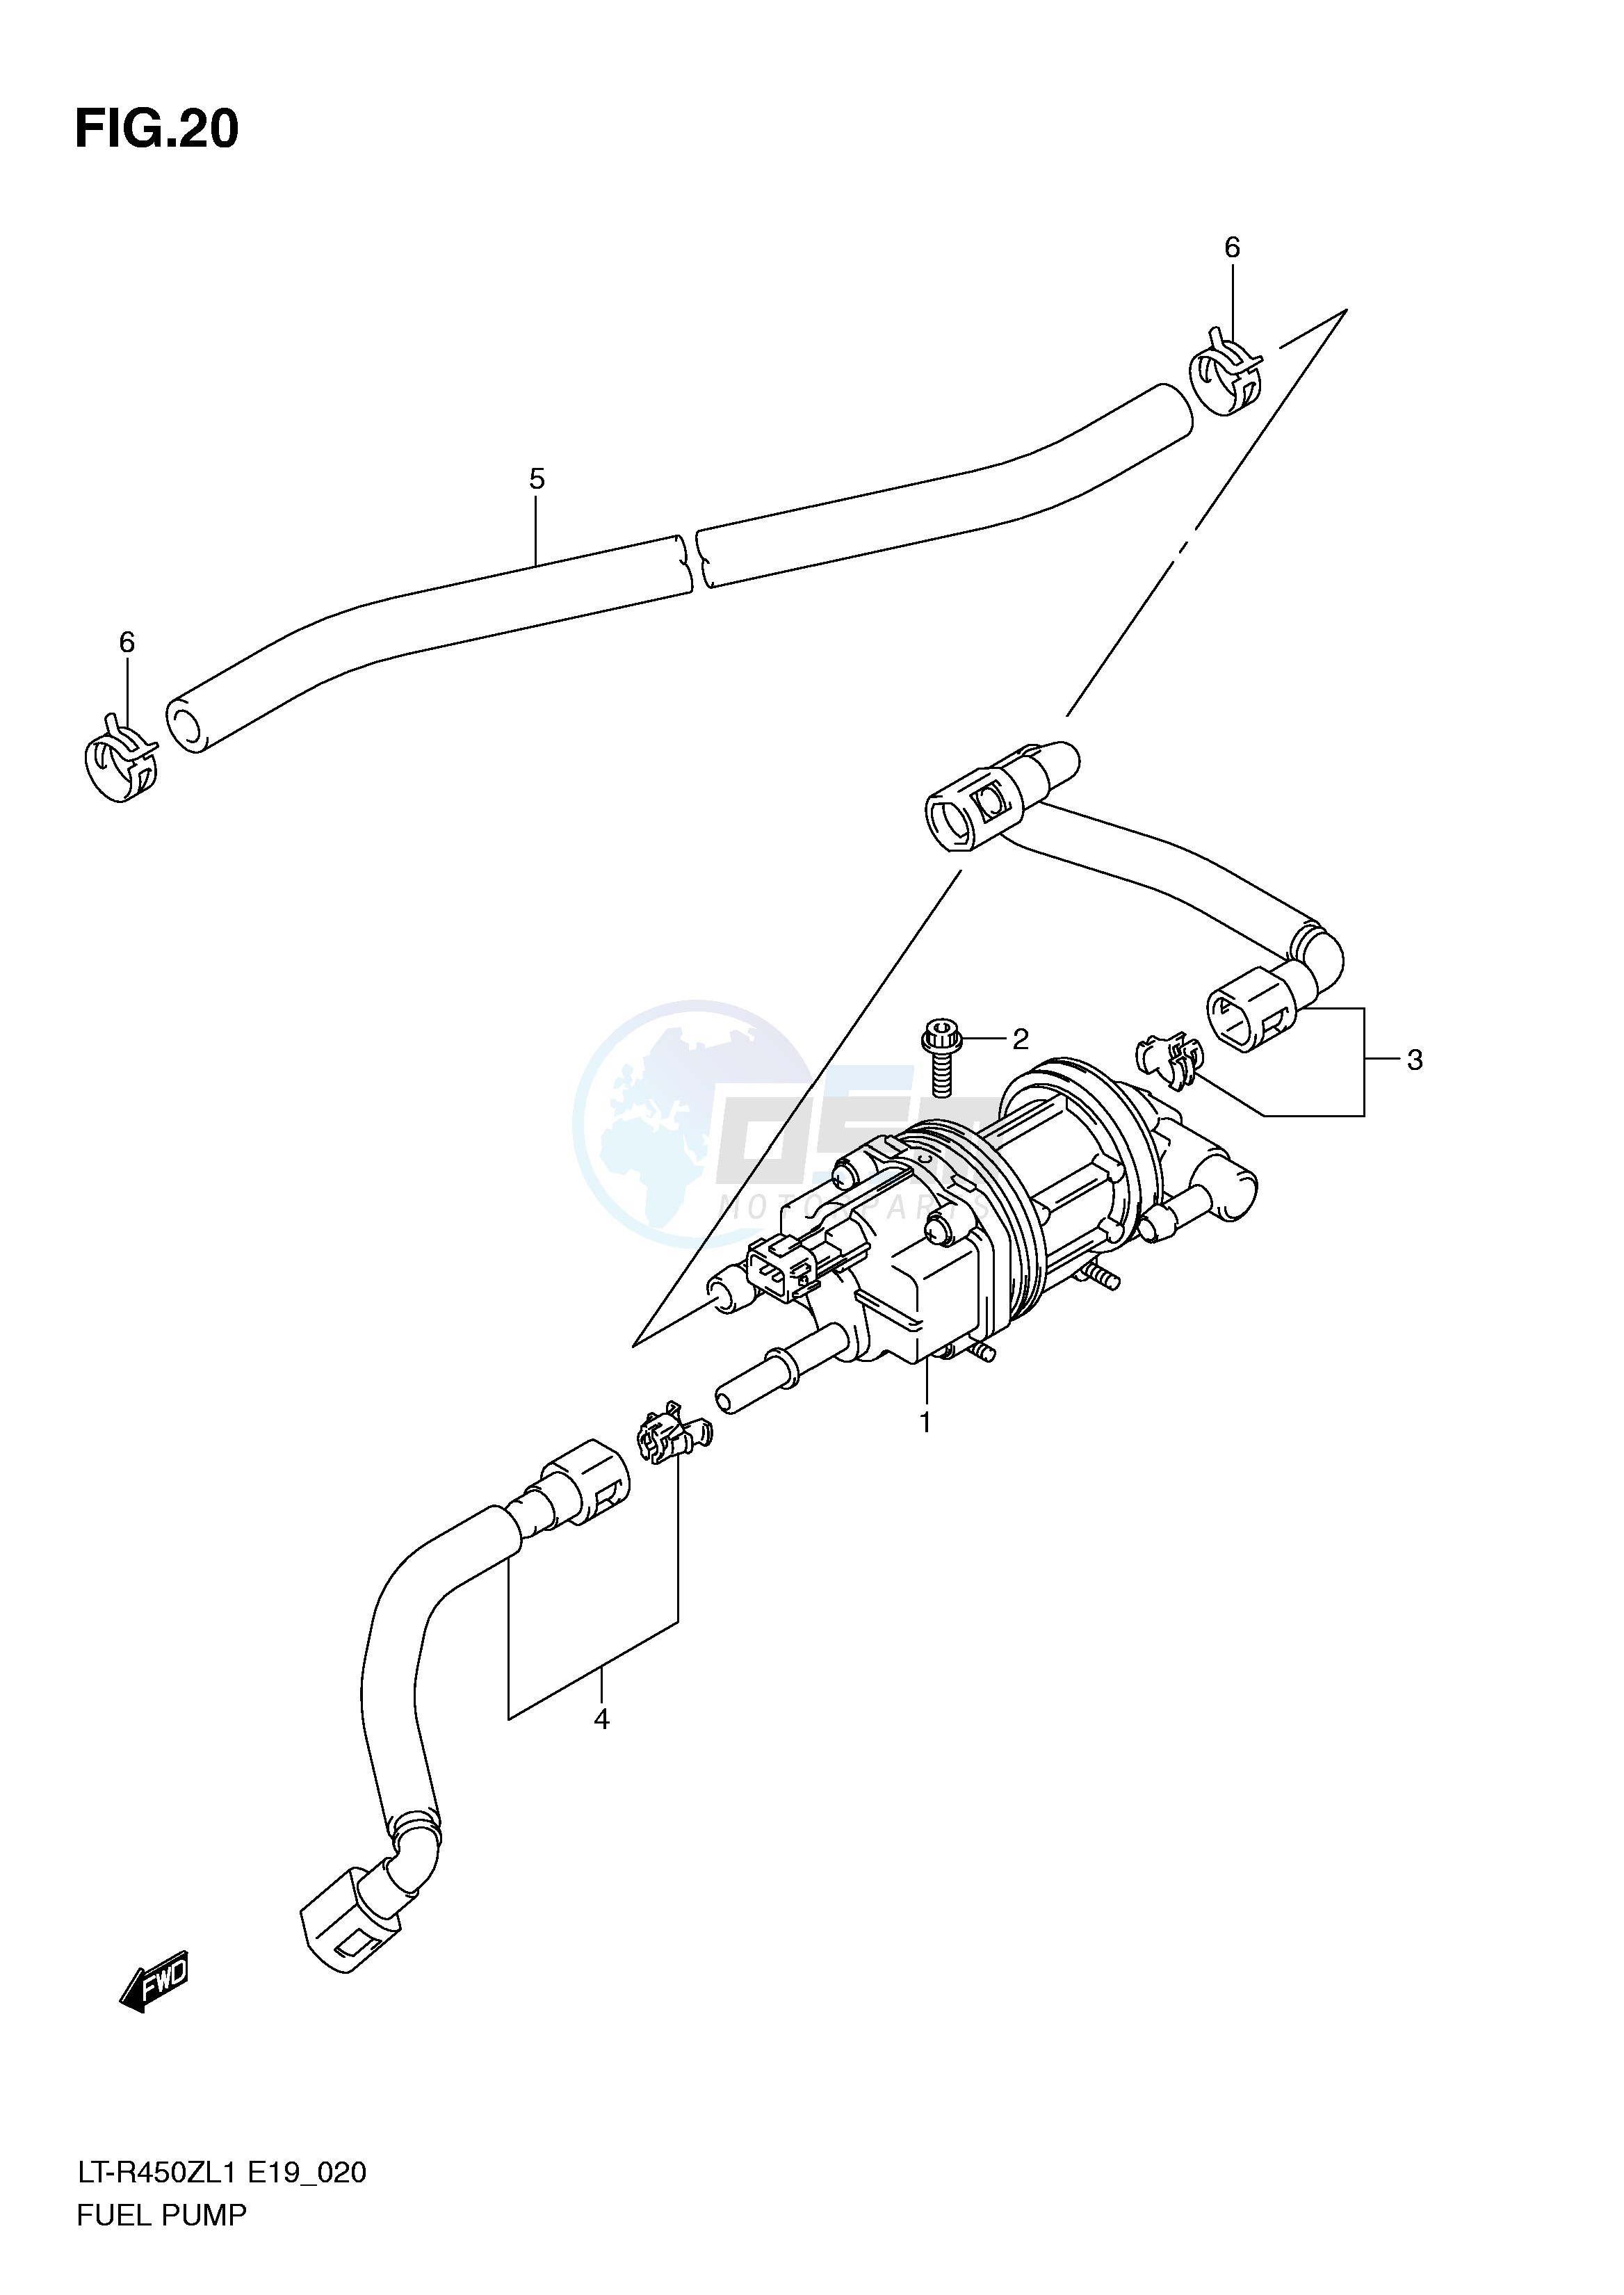 FUEL PUMP (LT-R450ZL1 E19) blueprint